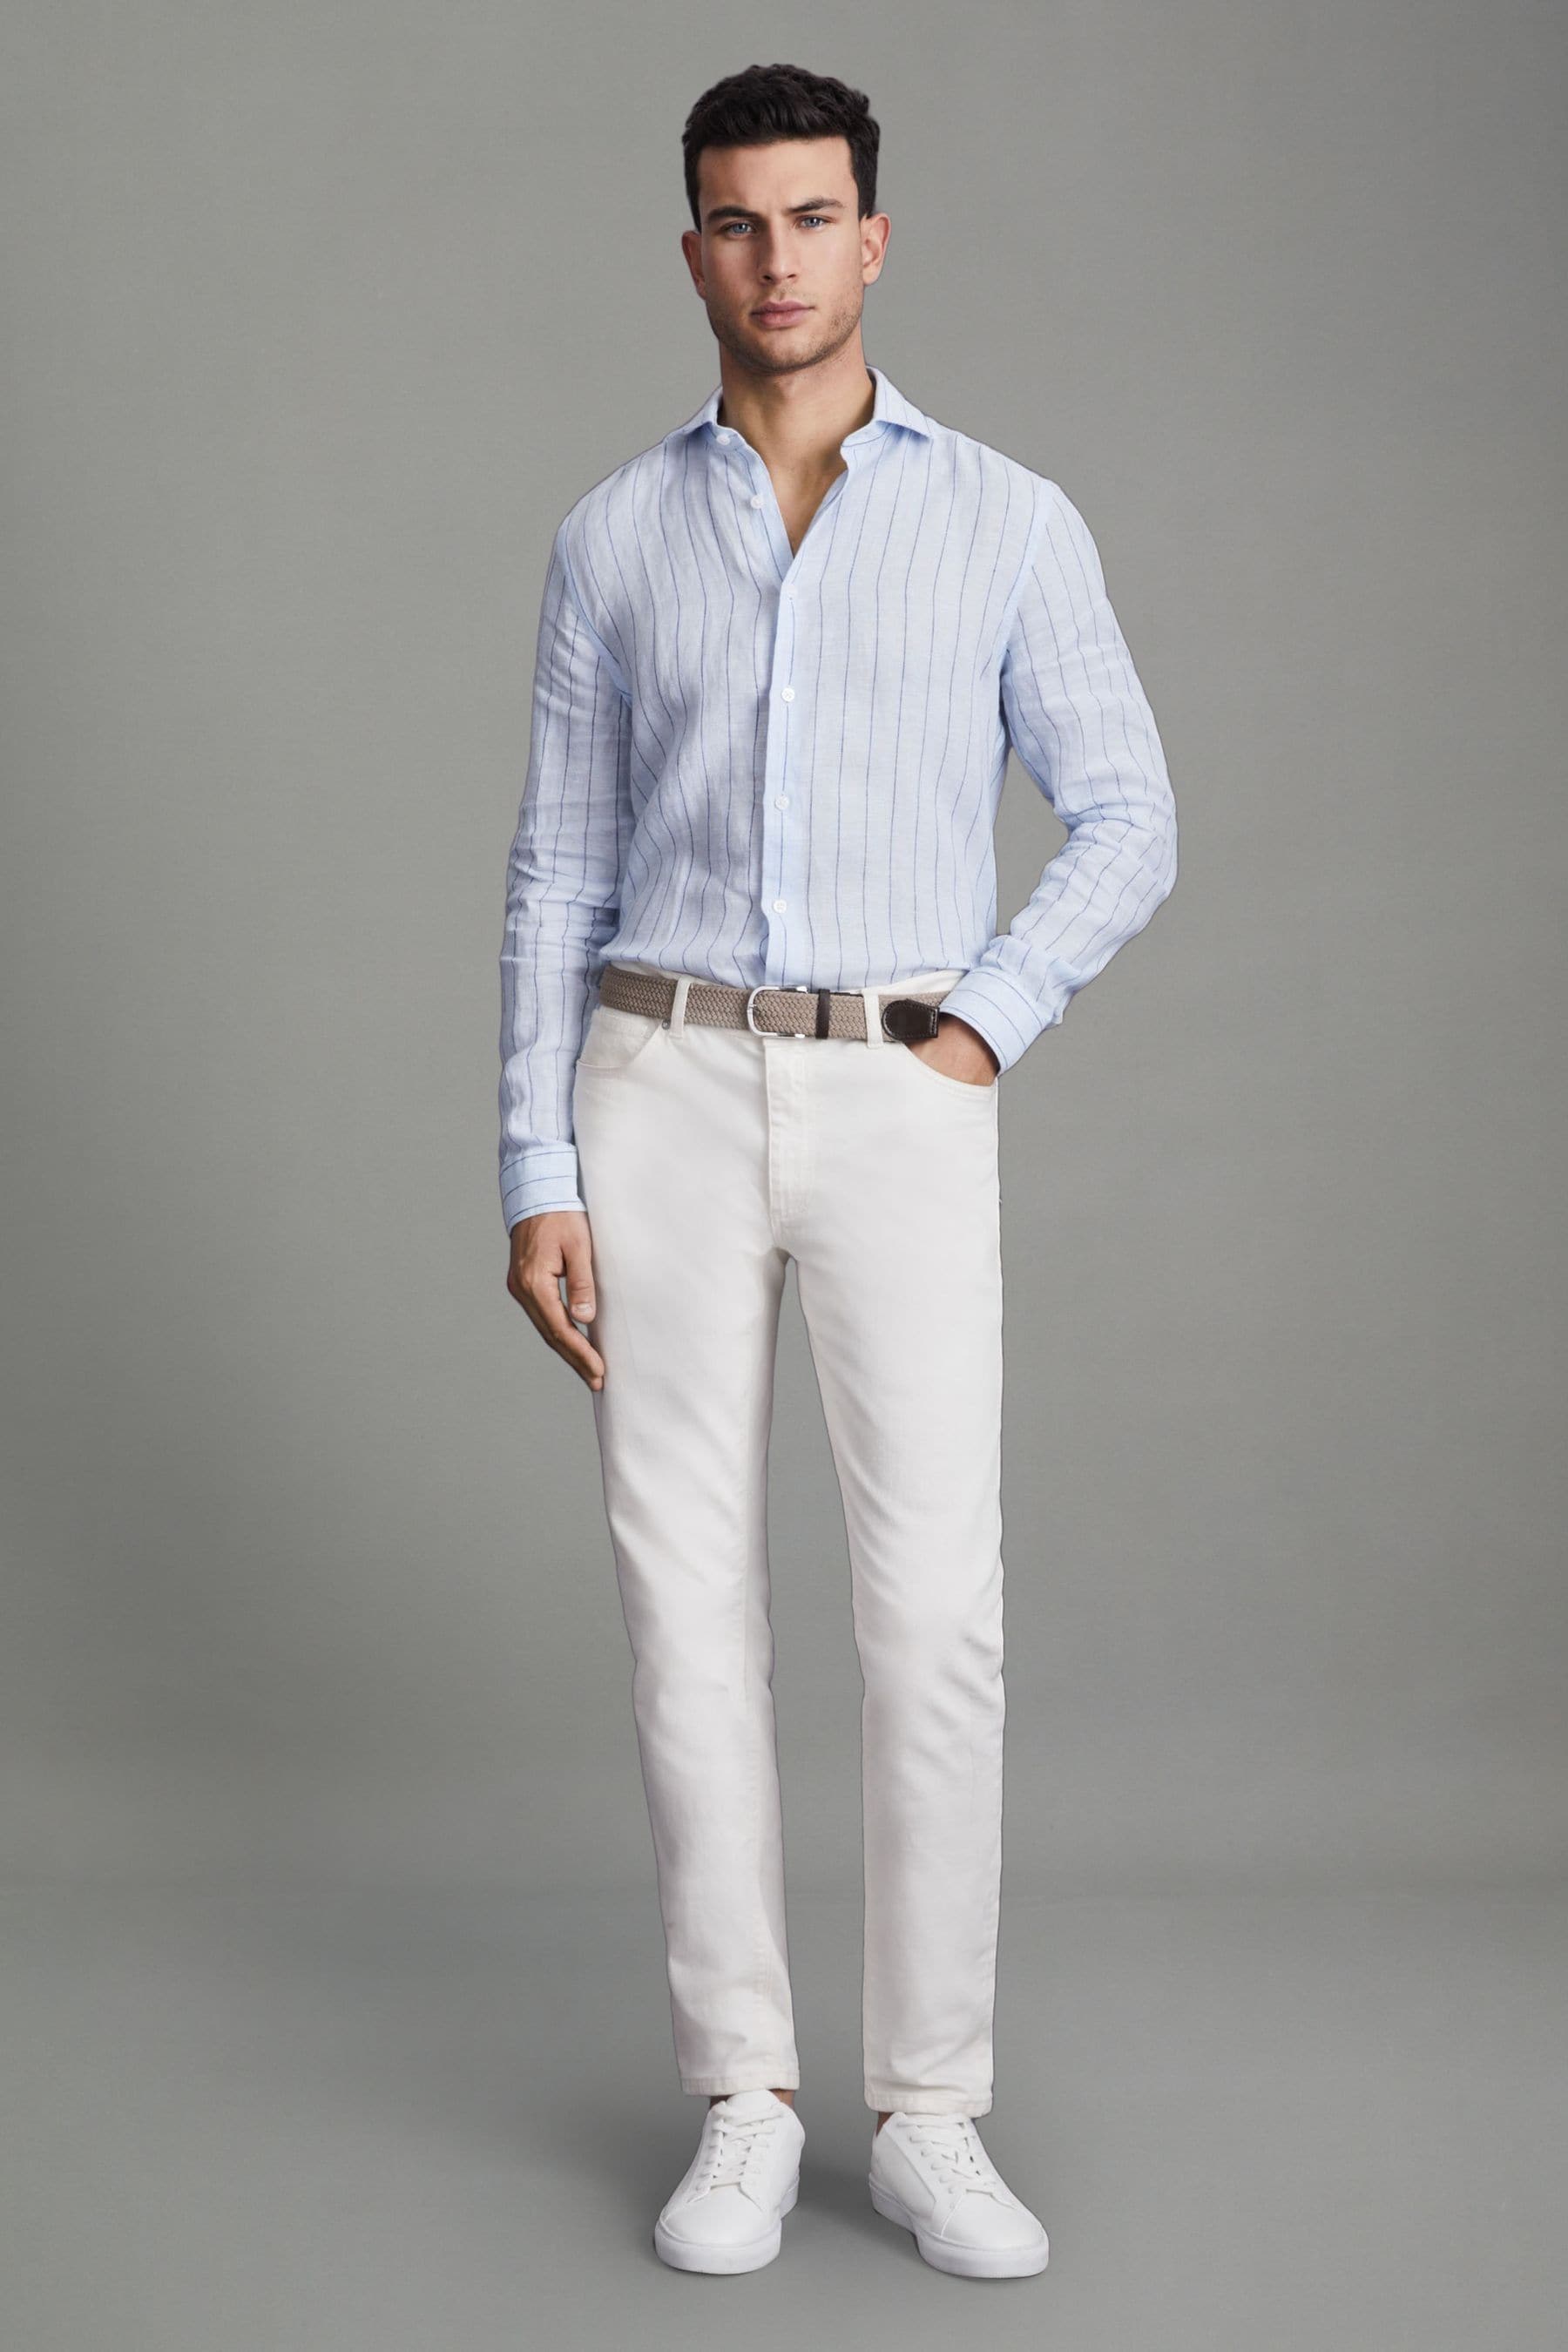 Reiss Ruban - Soft Blue Pin Stripe Linen Button-through Shirt, S